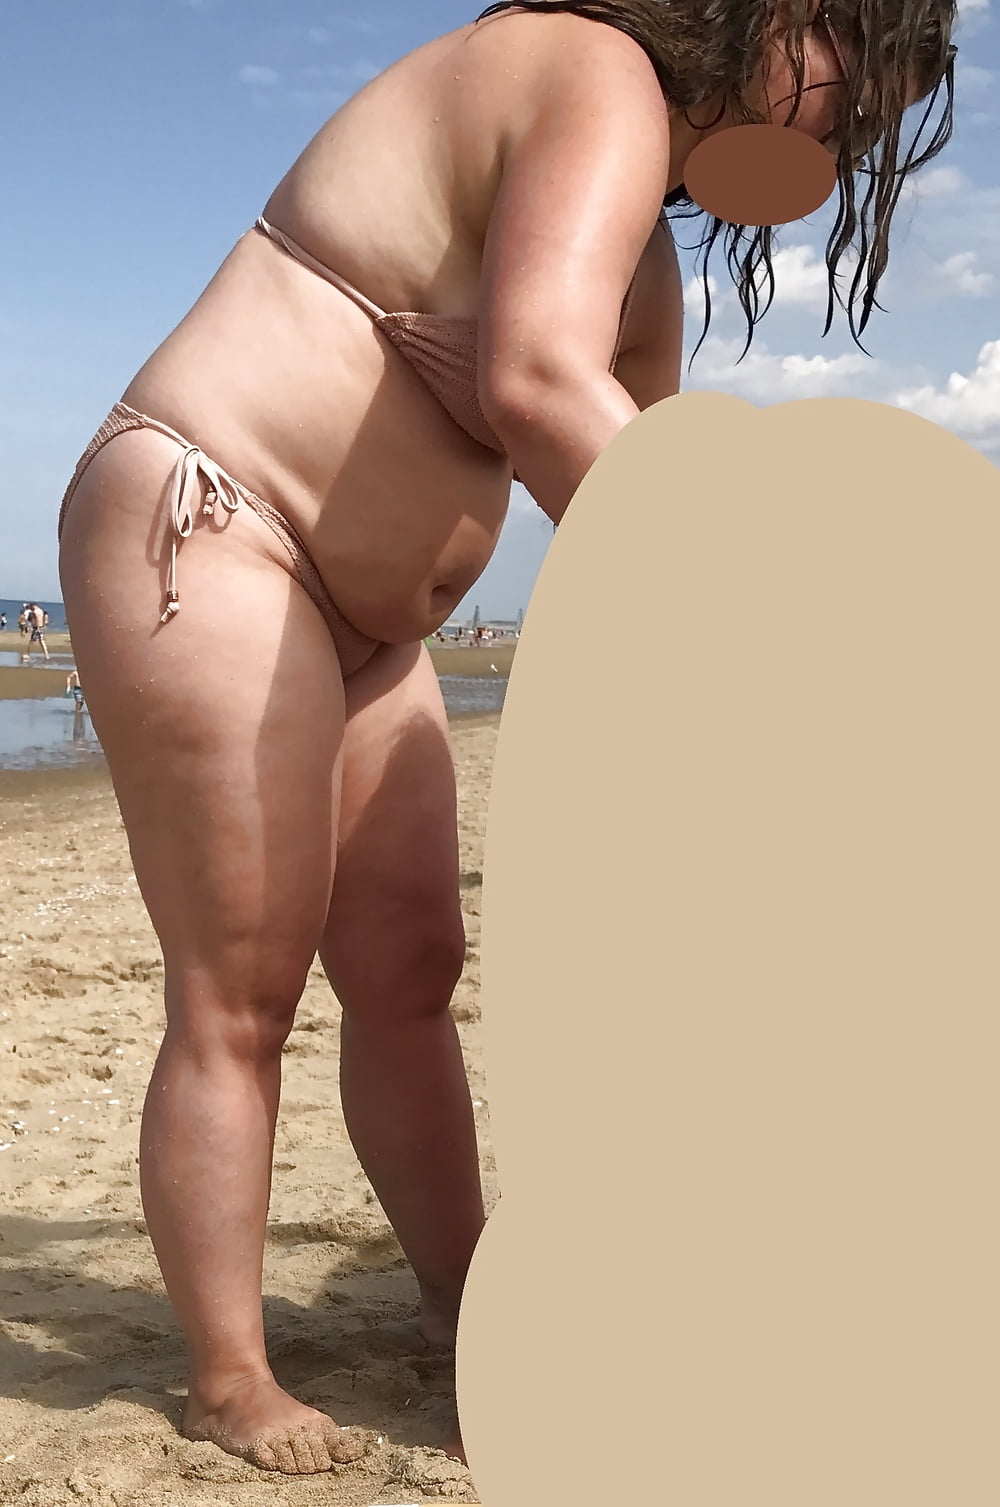 My_wife _Butt_ _Boobs_on_the_Beach_3_ secret_photos _ (18/18)